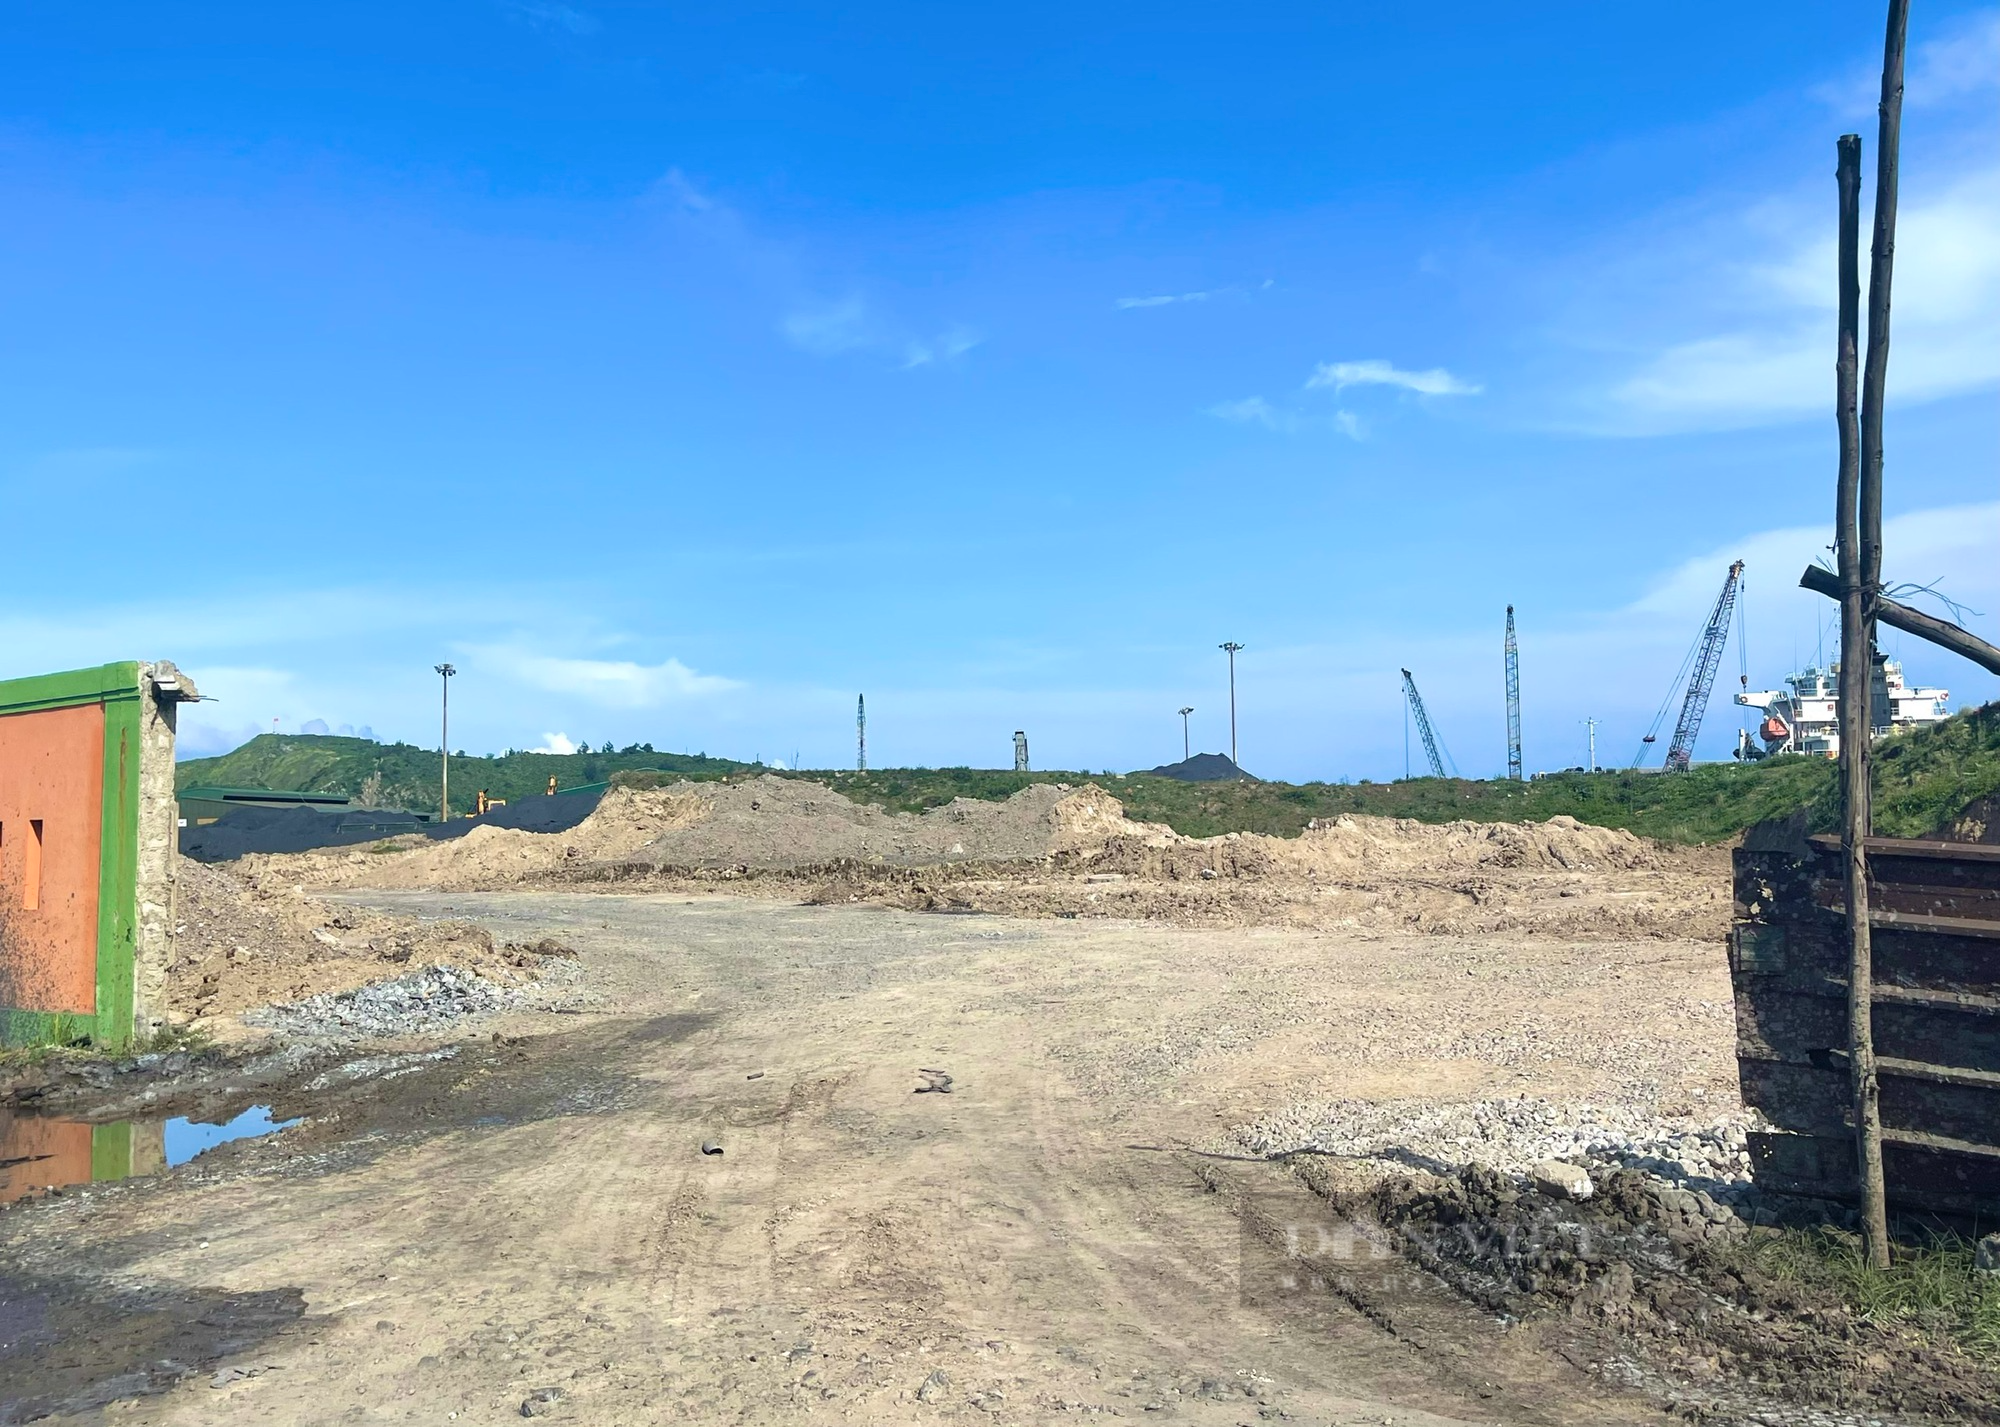 Quảng Bình: Doanh nghiệp đổ đất thải sai quy định trong Khu công nghiệp Hòn La - Ảnh 1.